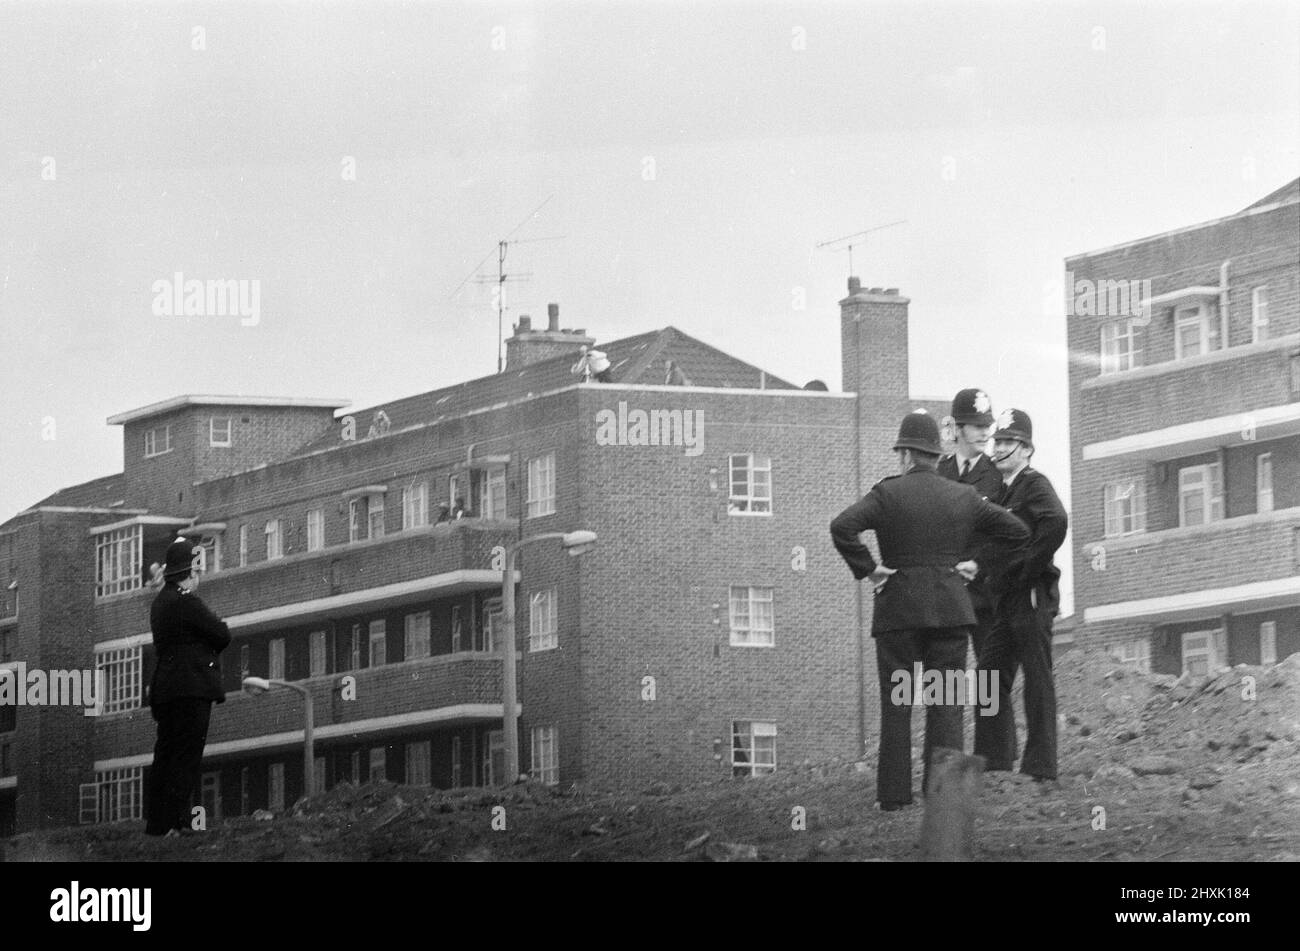 Bataille de Lewisham, sud de Londres, samedi 13th août 1977. Le rassemblement du Front national de New Cross à Lewisham est perturbé par des contre-manifestations et conduit à des affrontements violents avec les policiers et les manifestants anti-racisme. Sur la photo, les agents de police patrouillent dans le domaine du logement. Banque D'Images